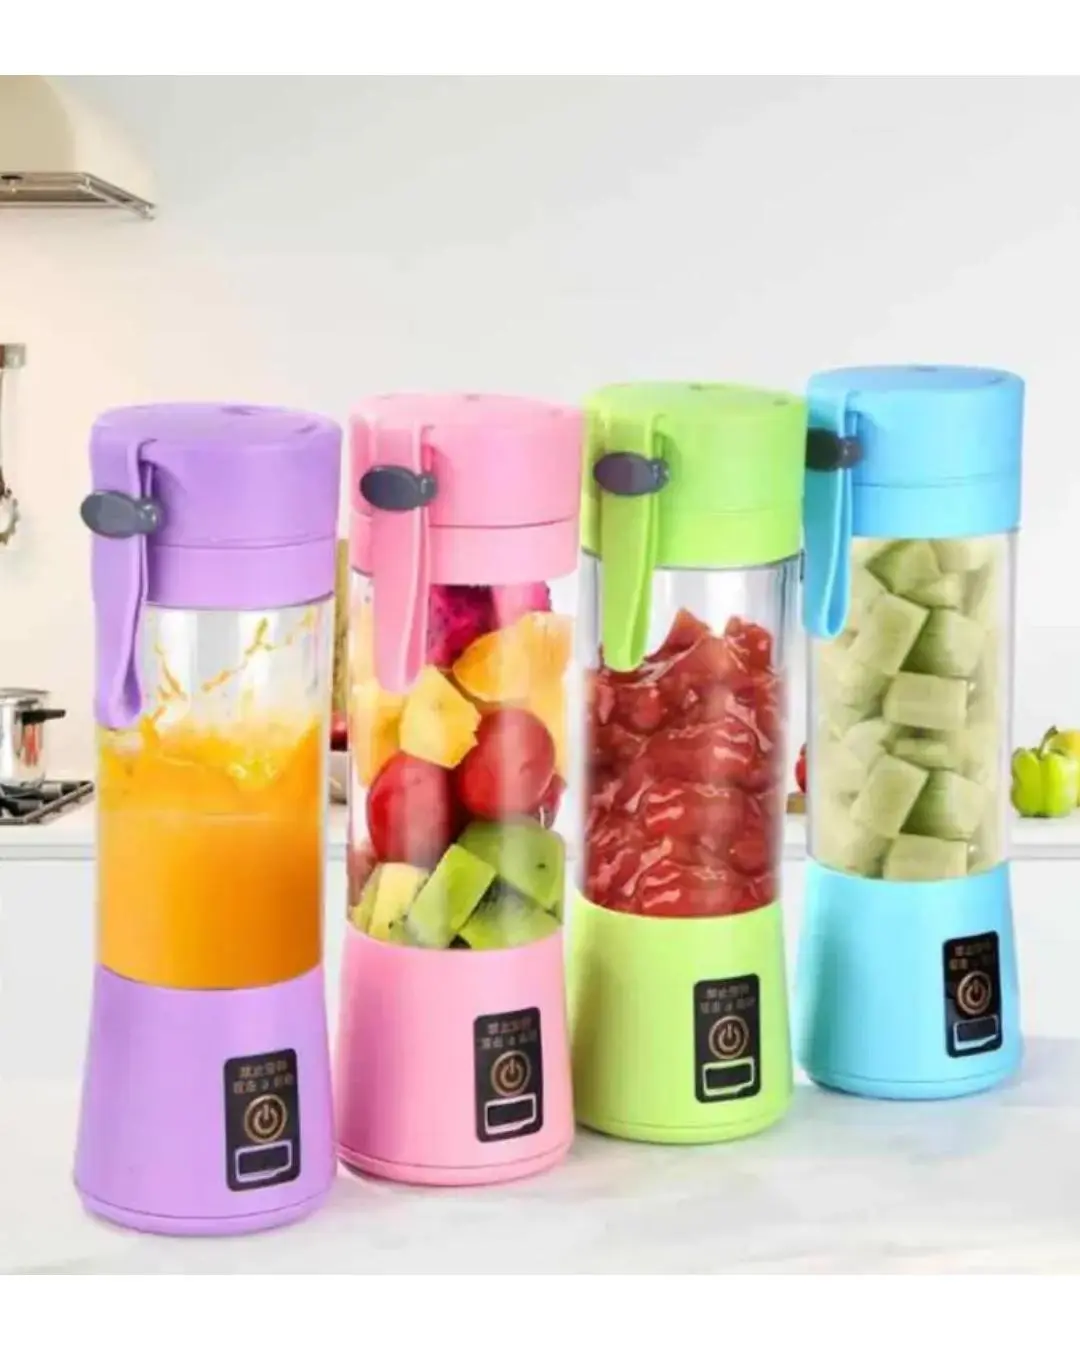 Portable juice blender